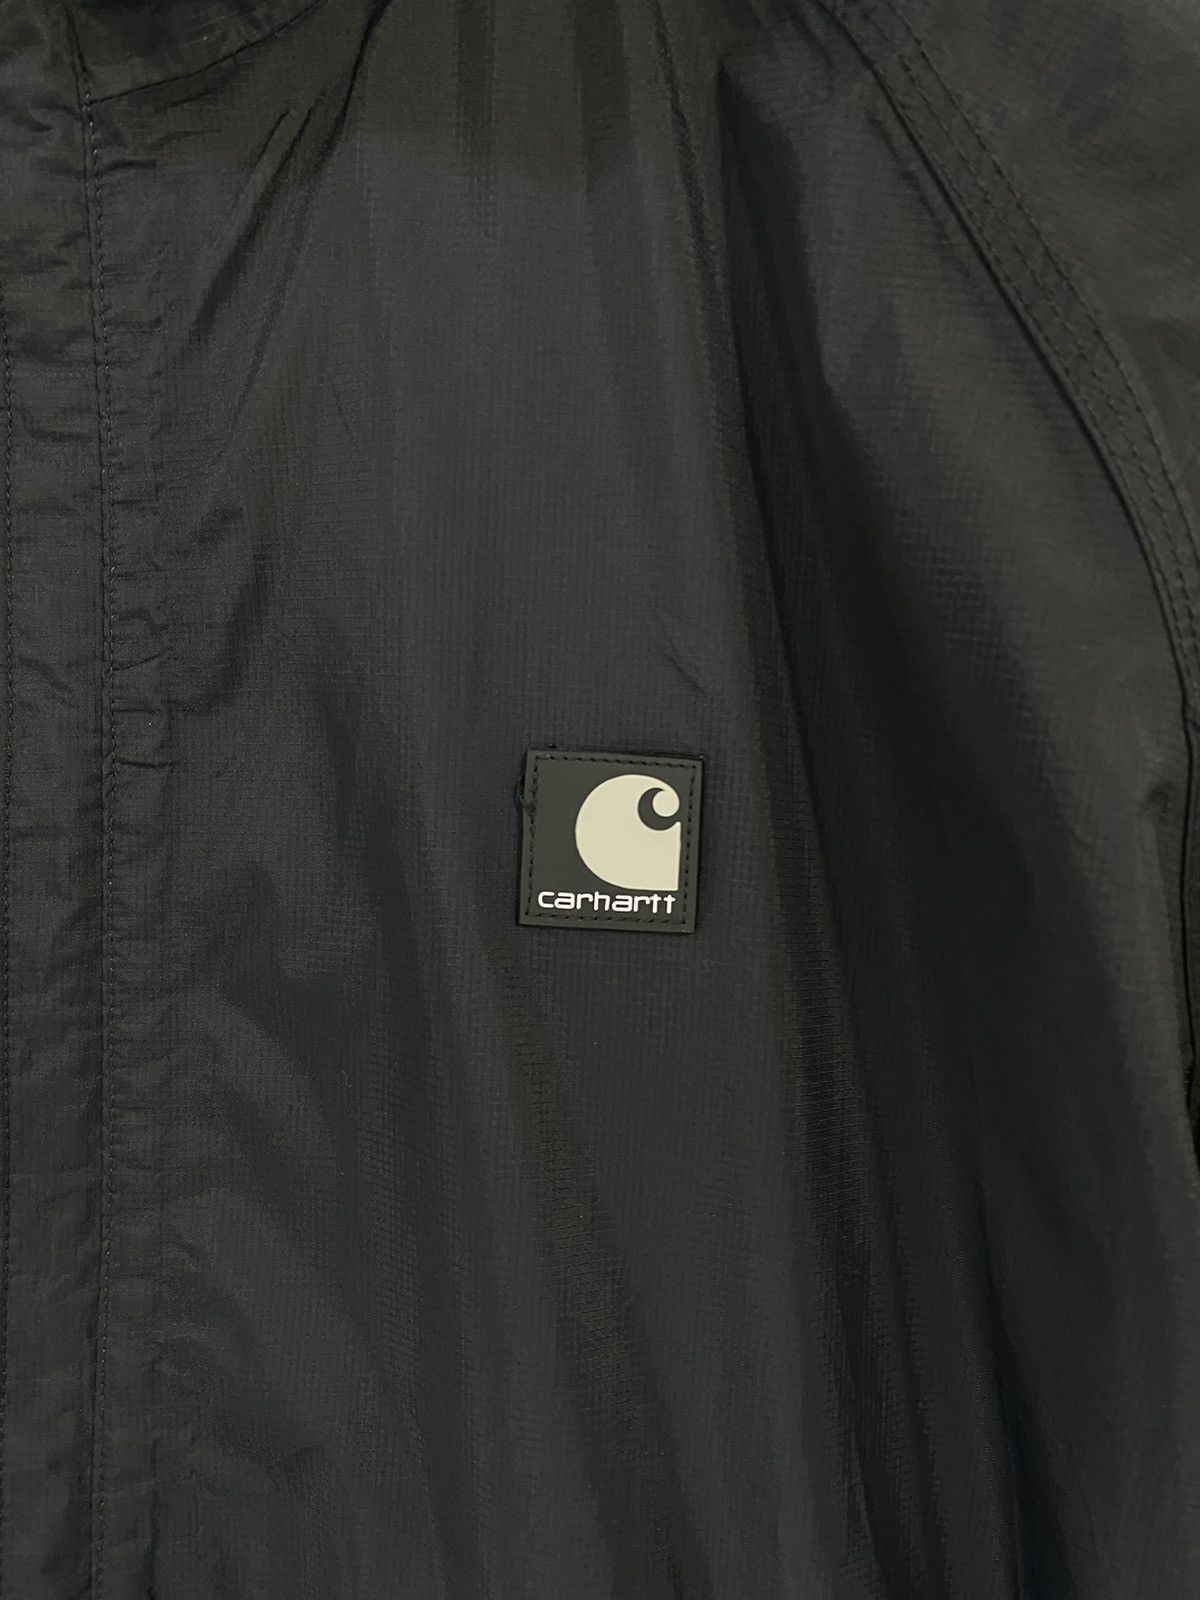 Carhartt Waterproof Breathable Jacket Hoodie Small Logo - 6